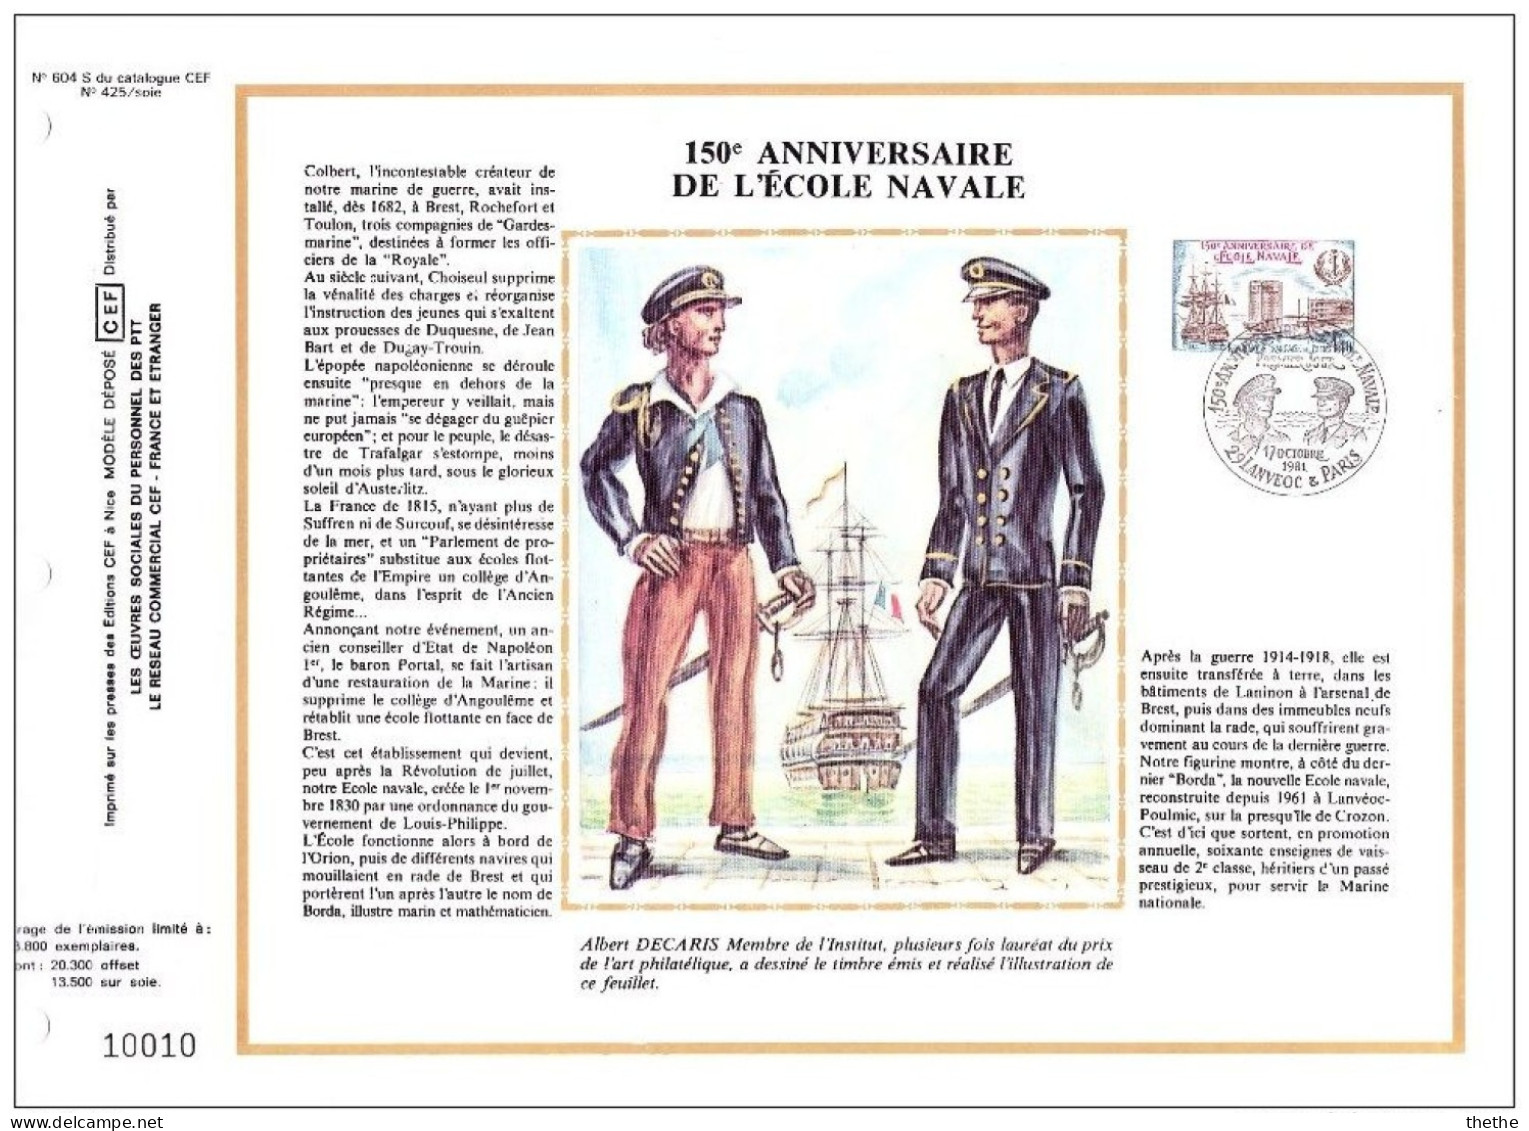 FRANCE - 150e Anniversaire De L'Ecole Navale - N° 604 Du Catalogue CEF - 1980-1989